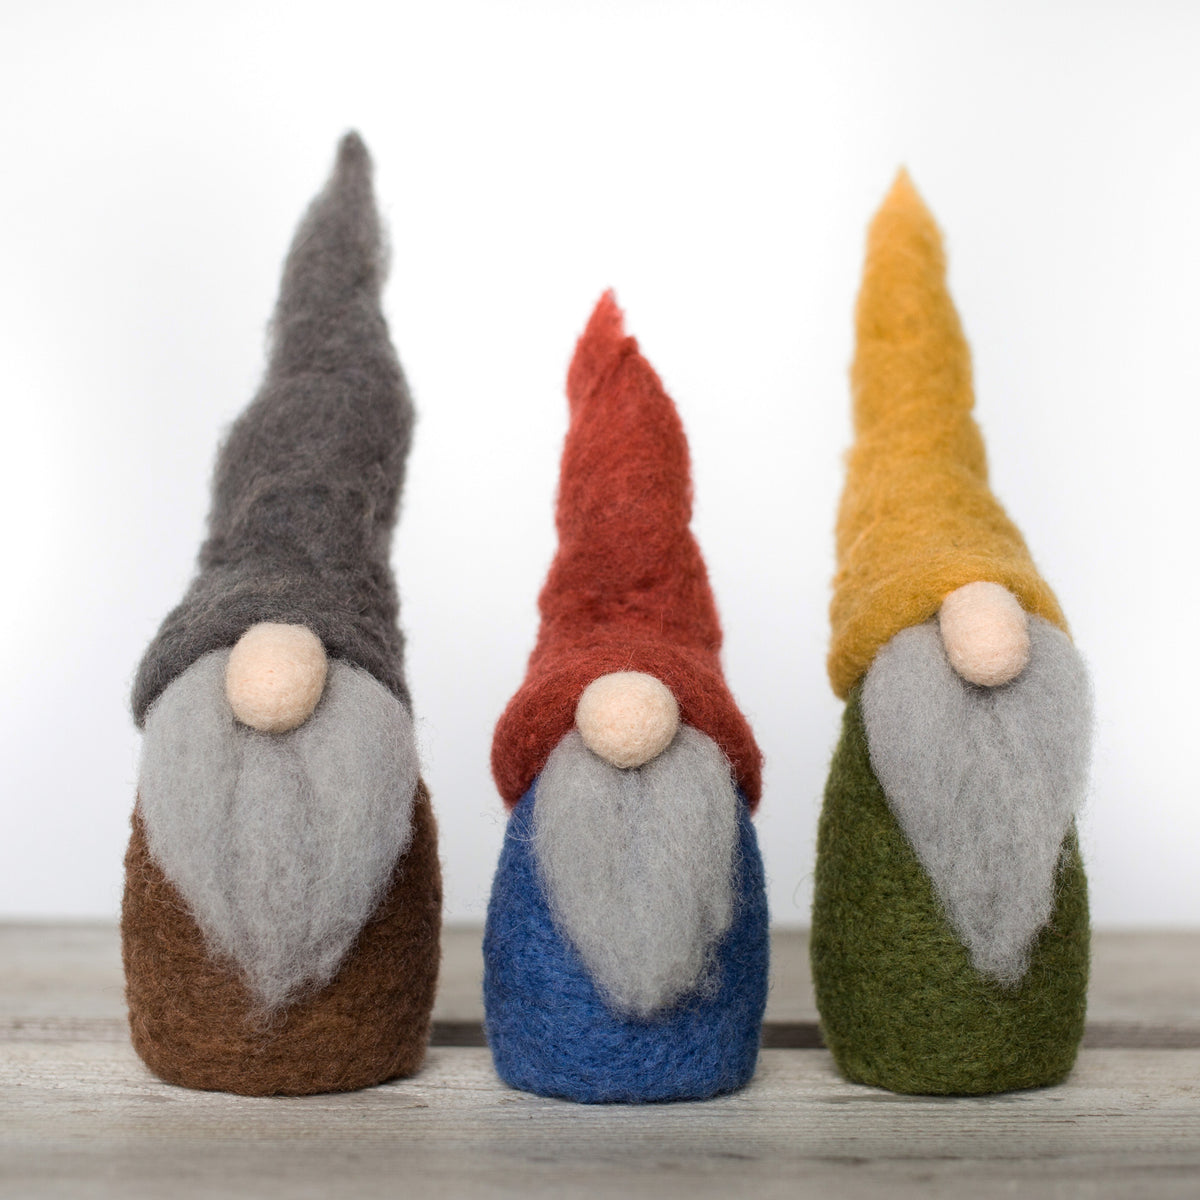 Woolpets Needle Felting Kit - Gnome